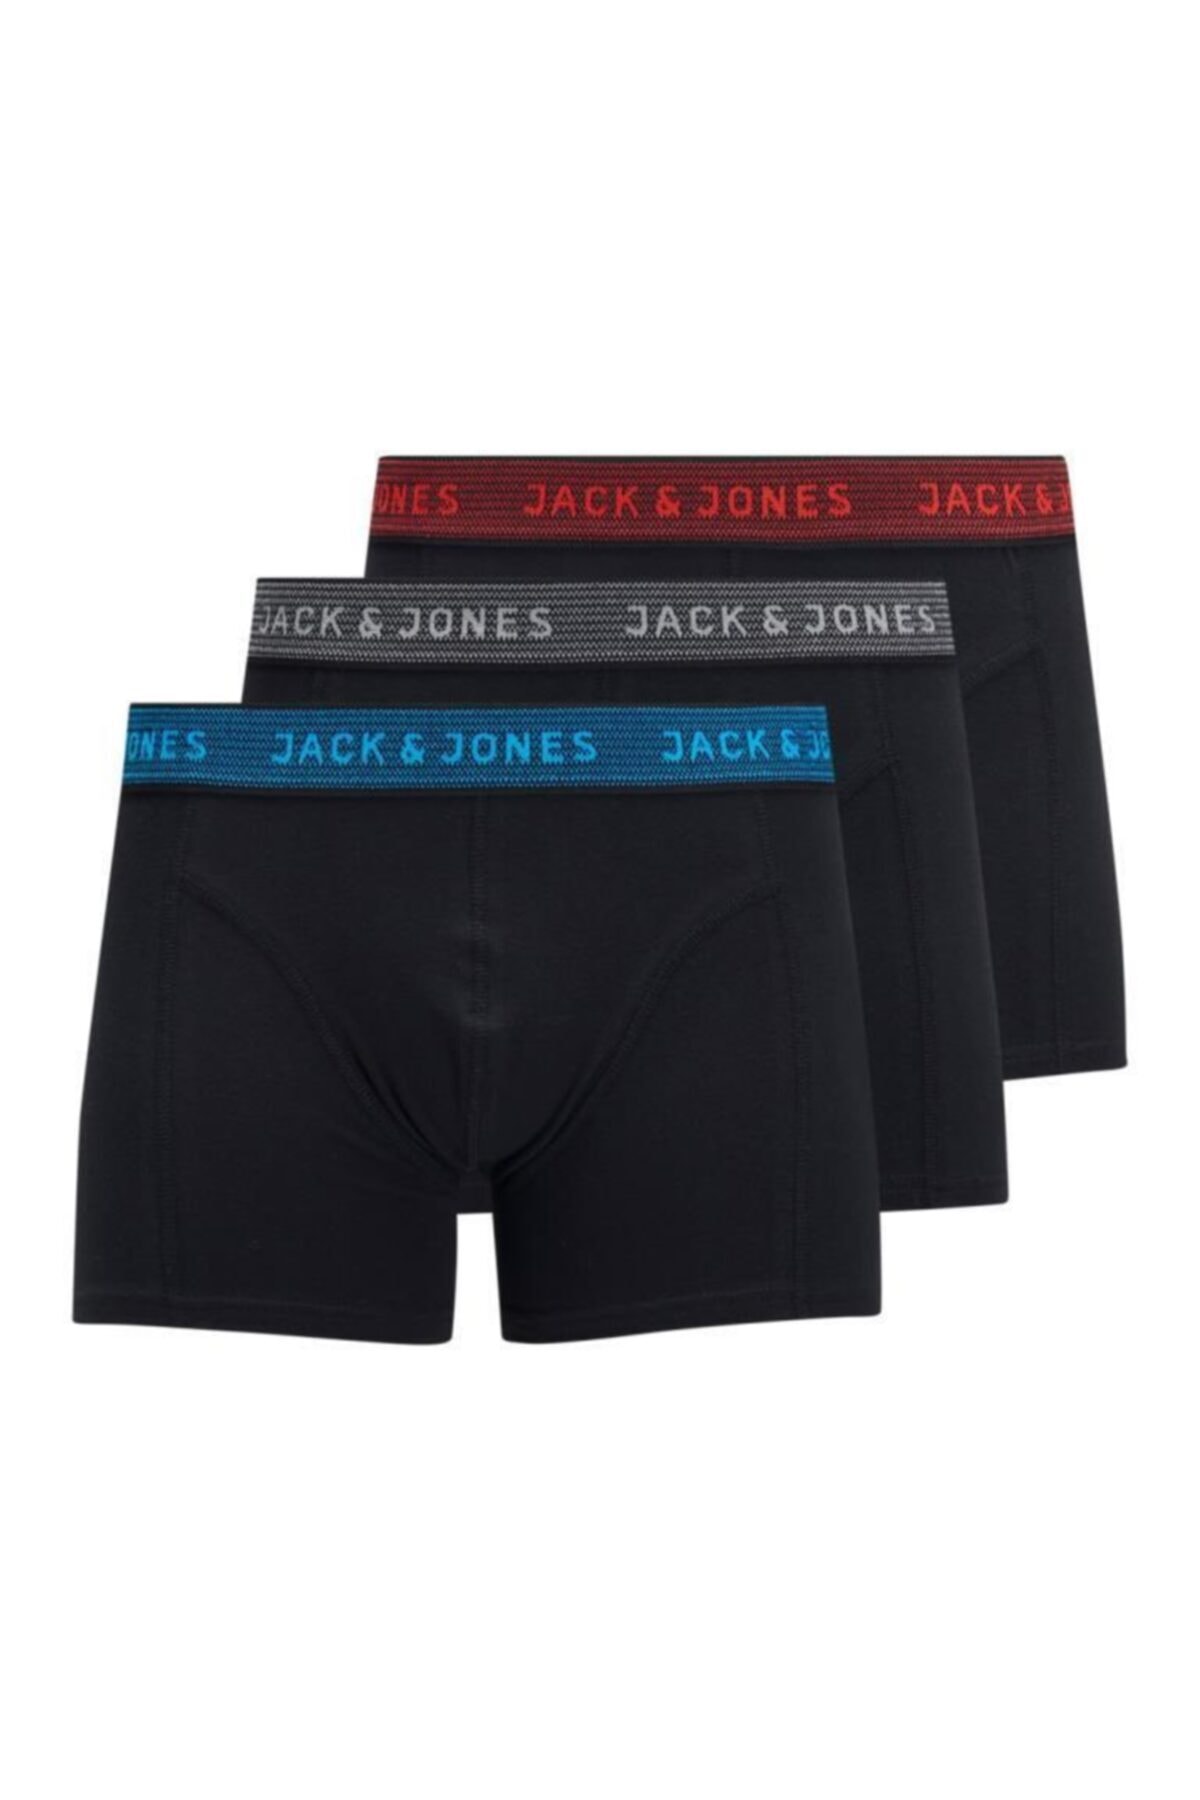 Jack & Jones Jack&jones Erkek 3'lü Boxer 12127816